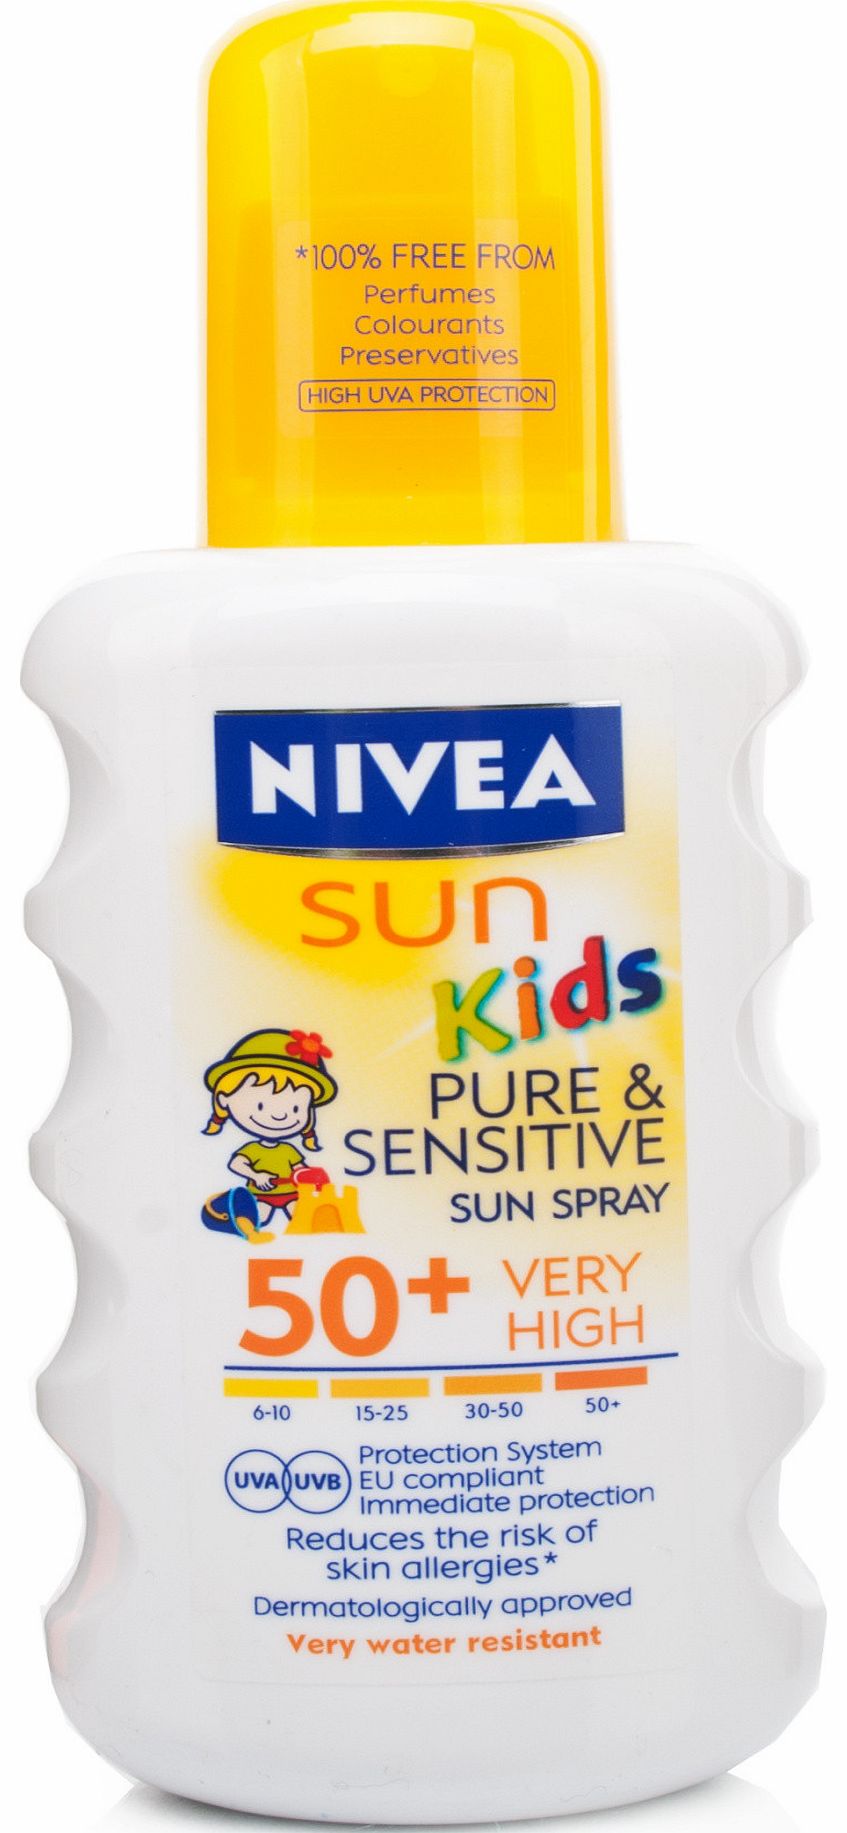 Sun Kids Pure and Sensitive Sun Spray SPF50